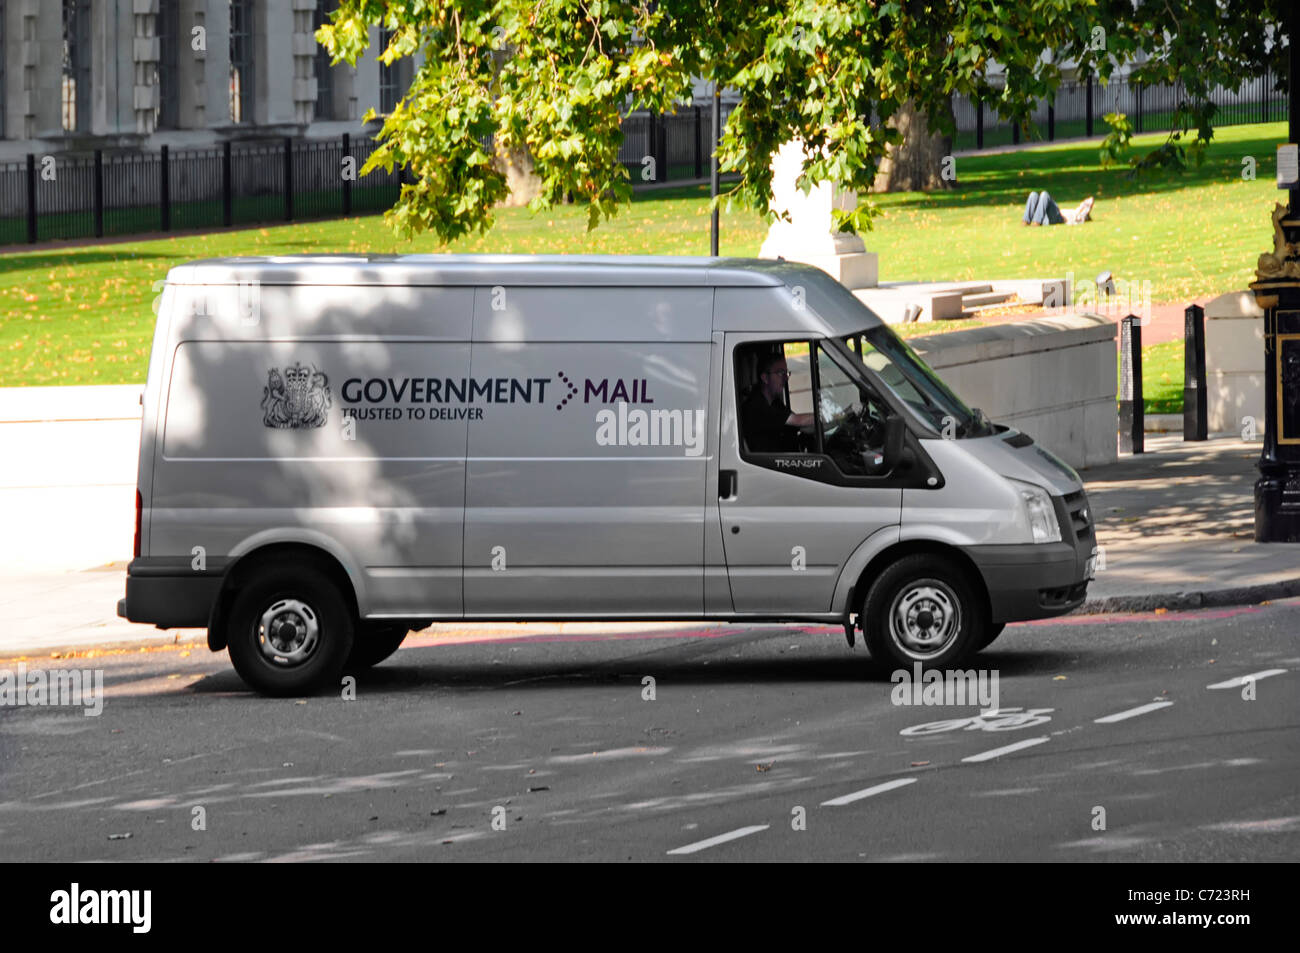 Courrier du gouvernement van & driver devant le ministère de la Défense nationale construit à Londres Angleterre Royaume-uni Banque D'Images